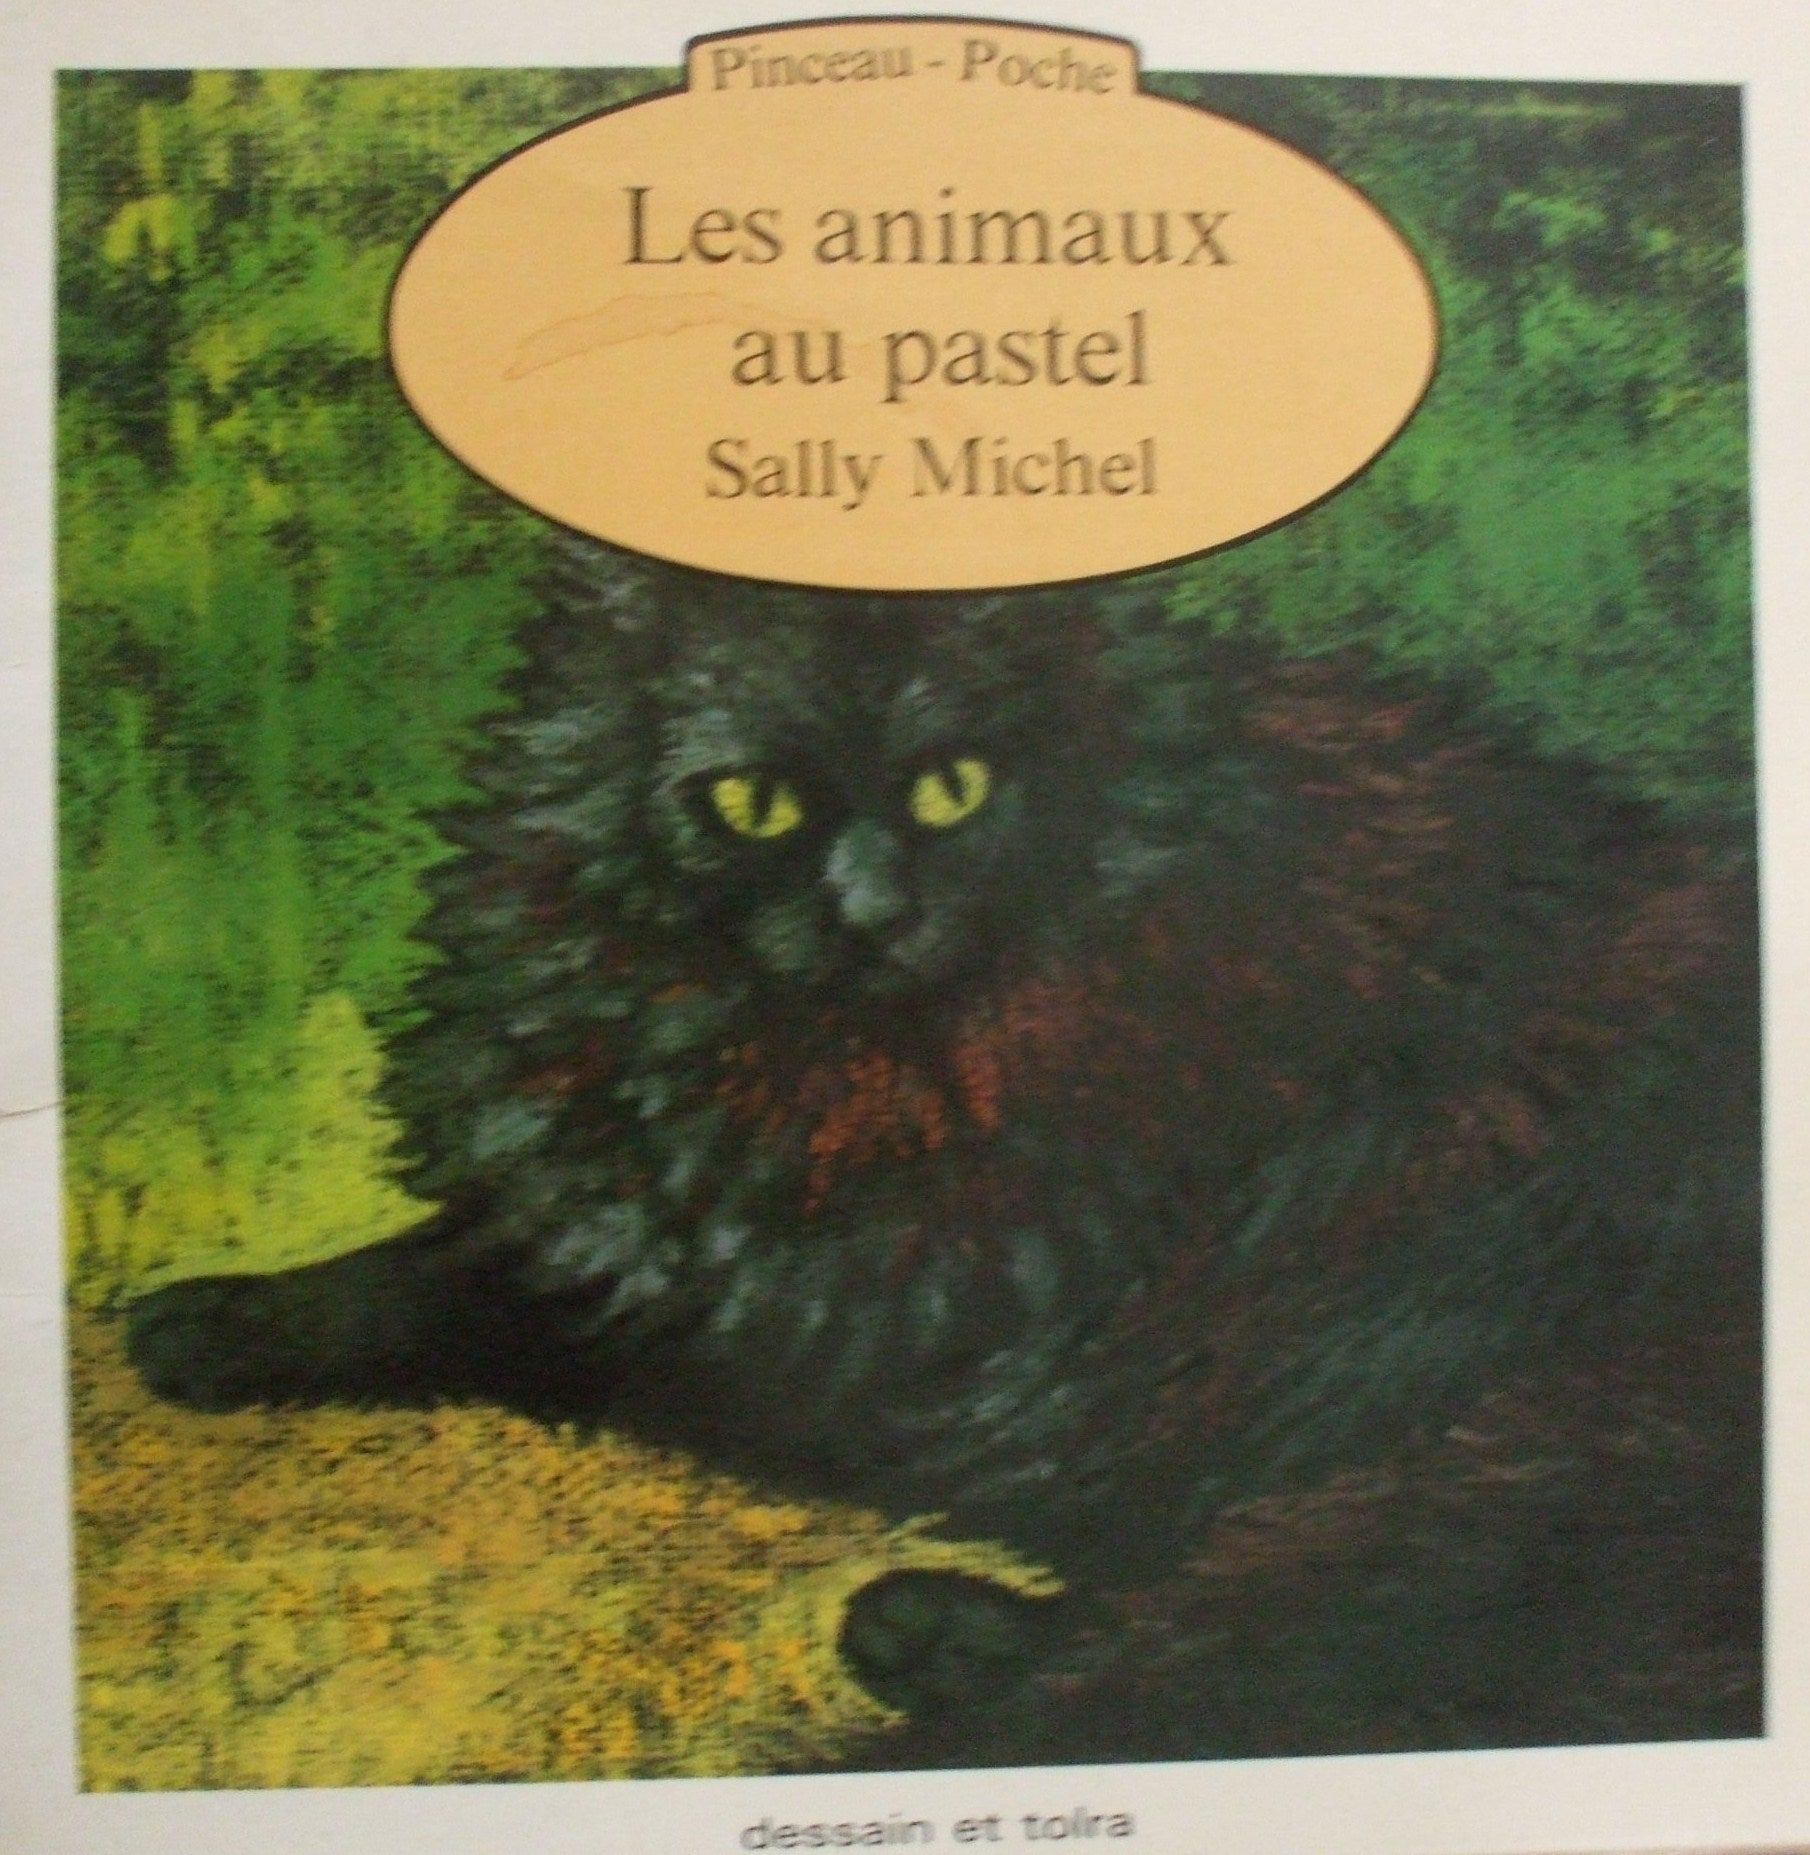 Livre ISBN 2249222819 Pinceau-Poche : Les animaux au pastel (Sally Michel)